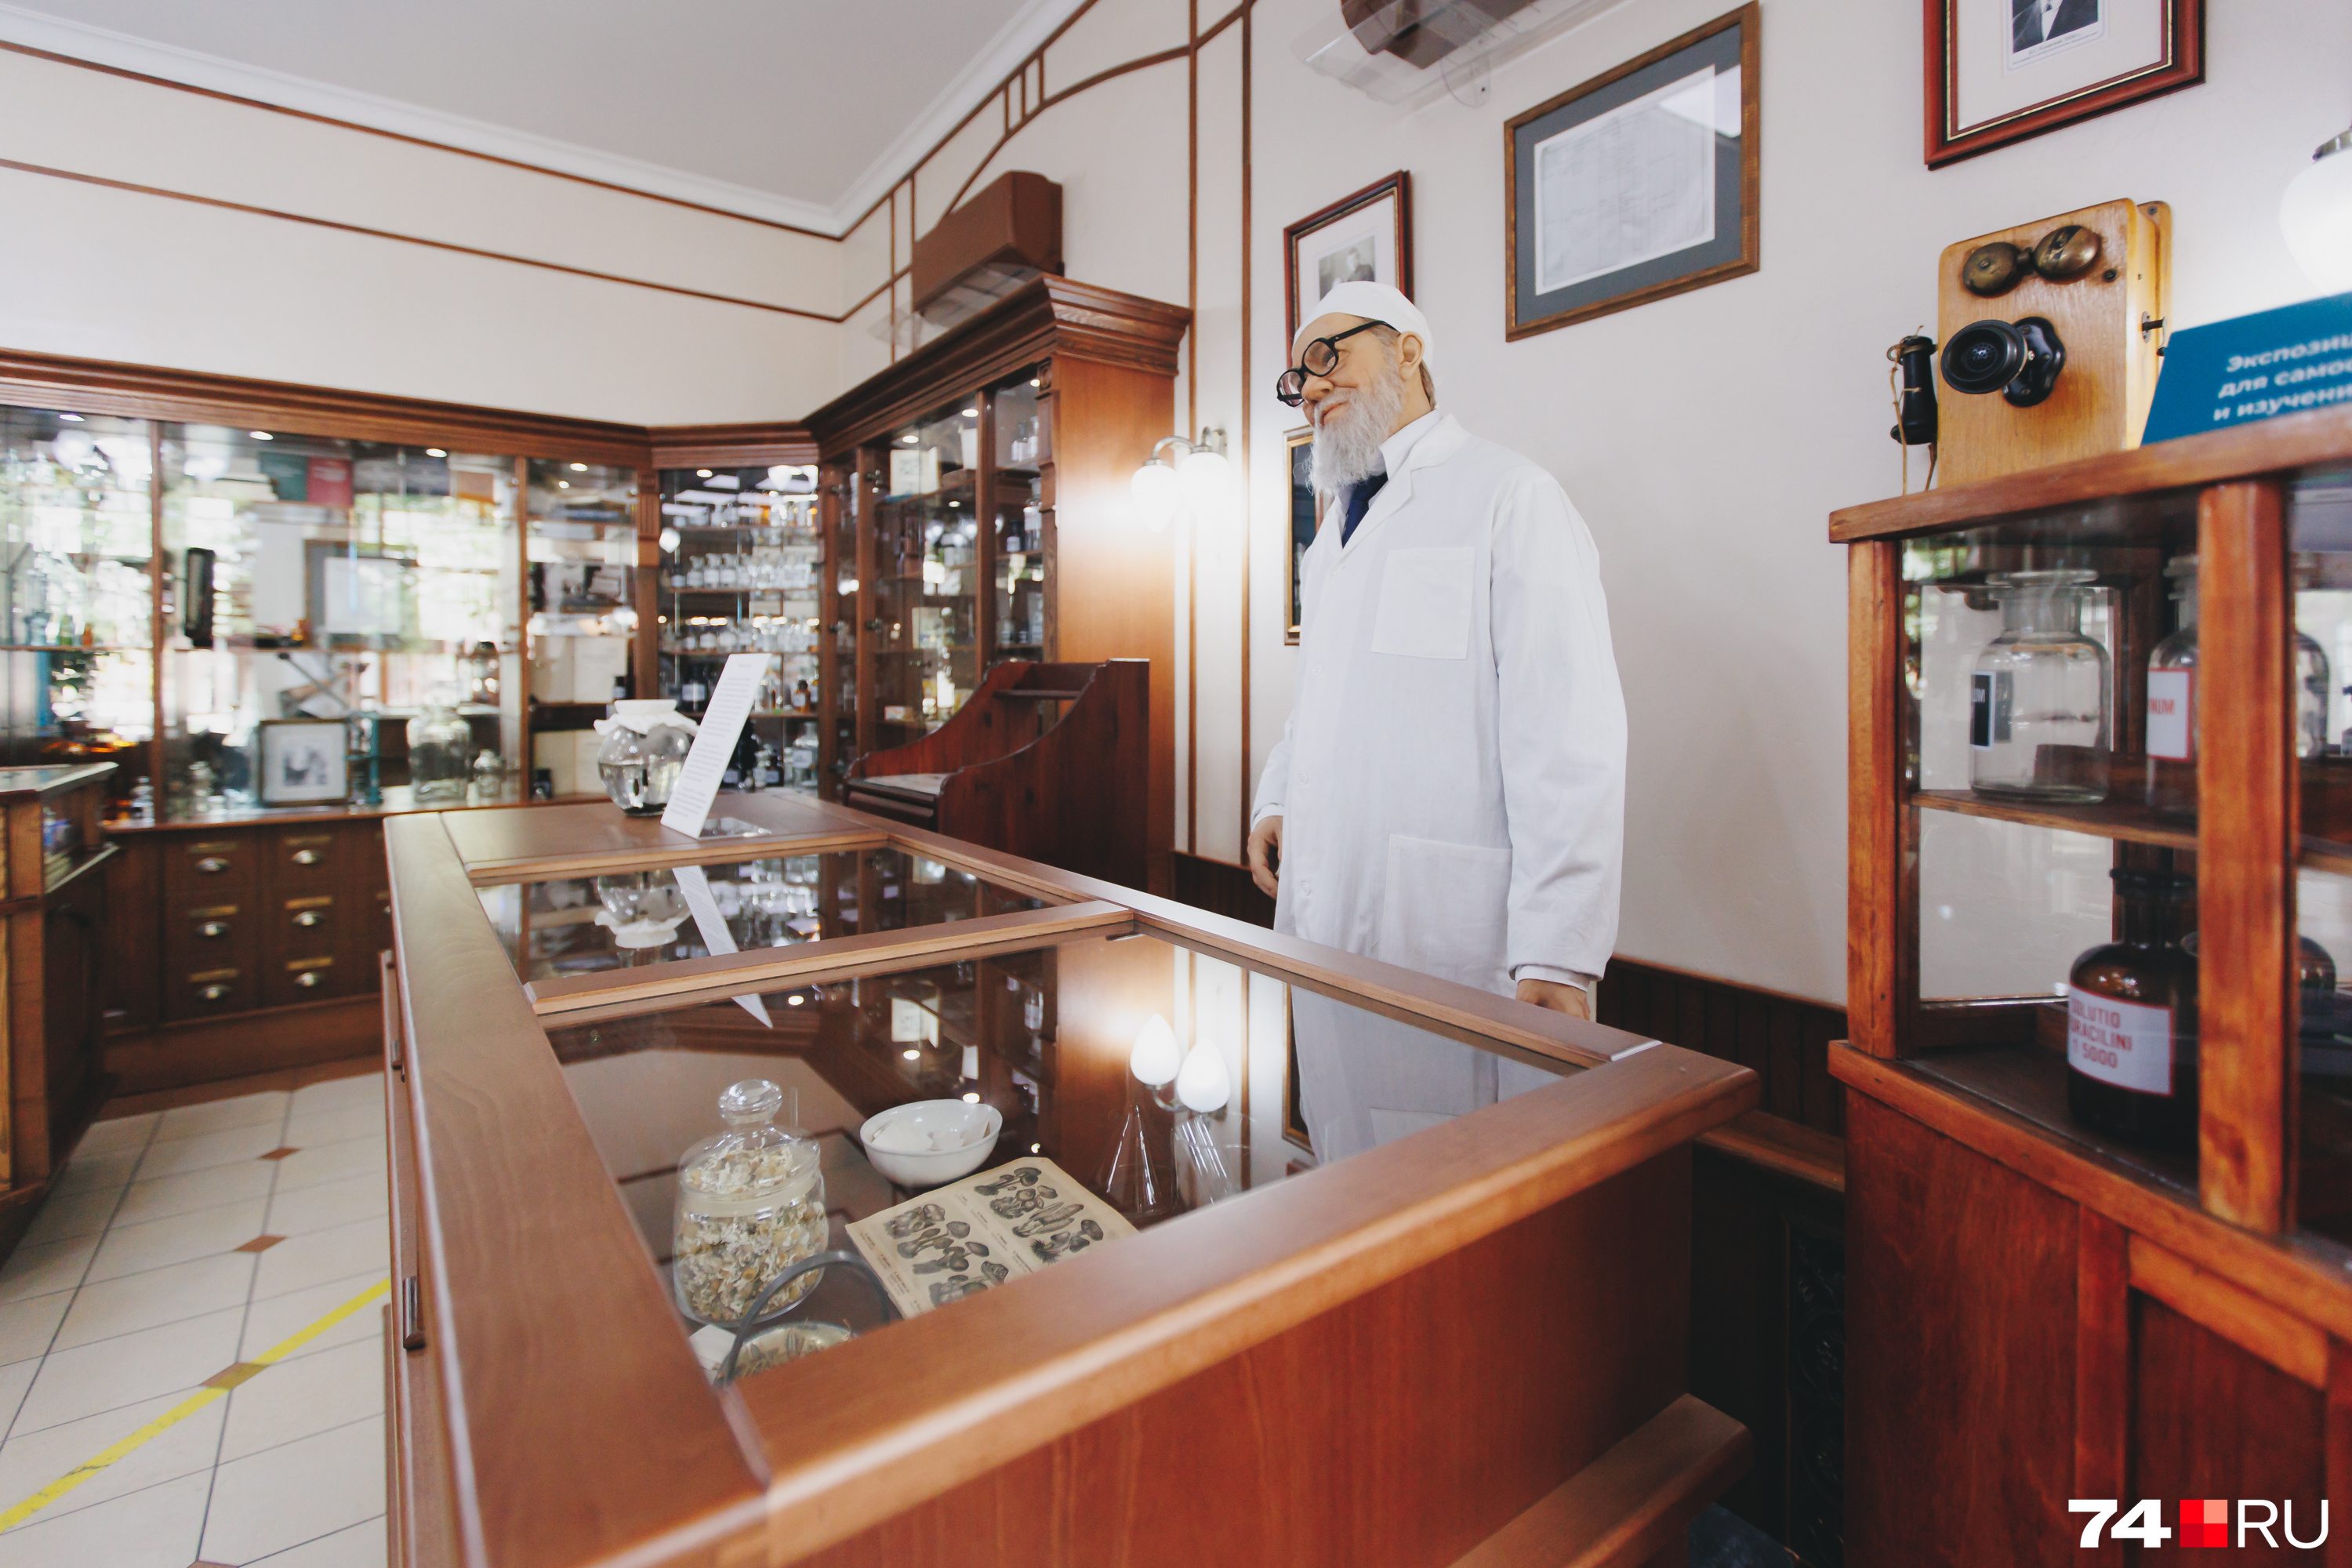 Посетителей встречает фигура Якова Соломоновича Плонского — первого владельца, а затем заведующего аптекой